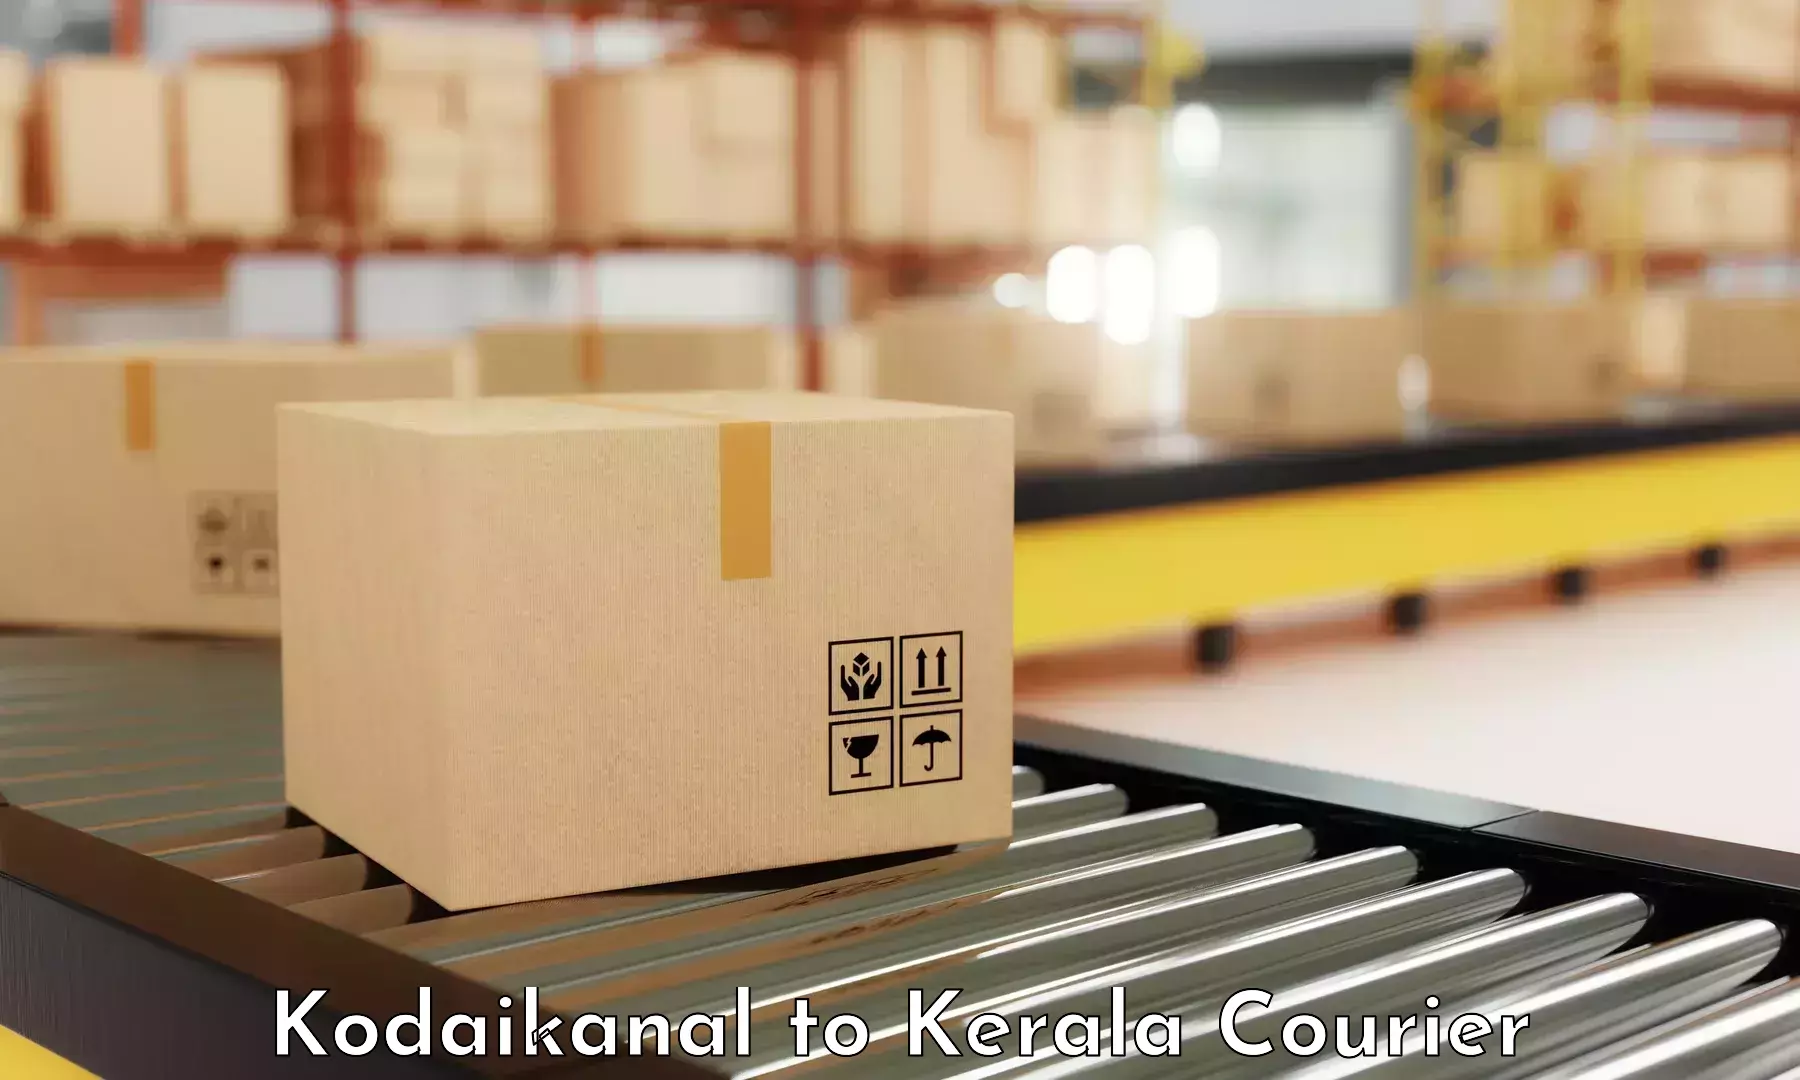 Cost-effective courier solutions Kodaikanal to Idukki